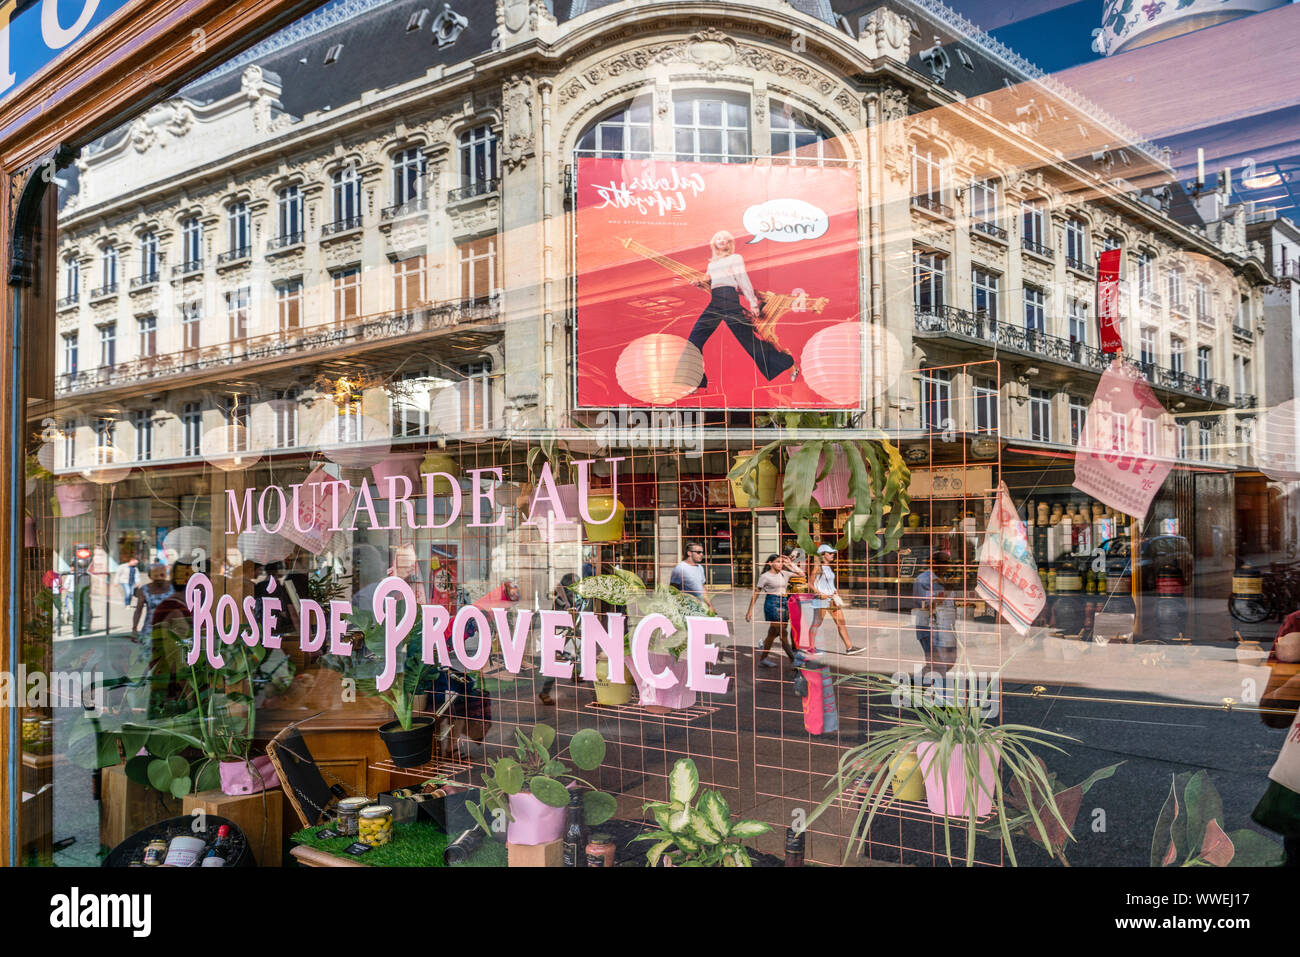 La moutarde maille boutique boutique, Galerie Lafayette reflet dans vitrine, Dijon, Bourgogne, France Banque D'Images